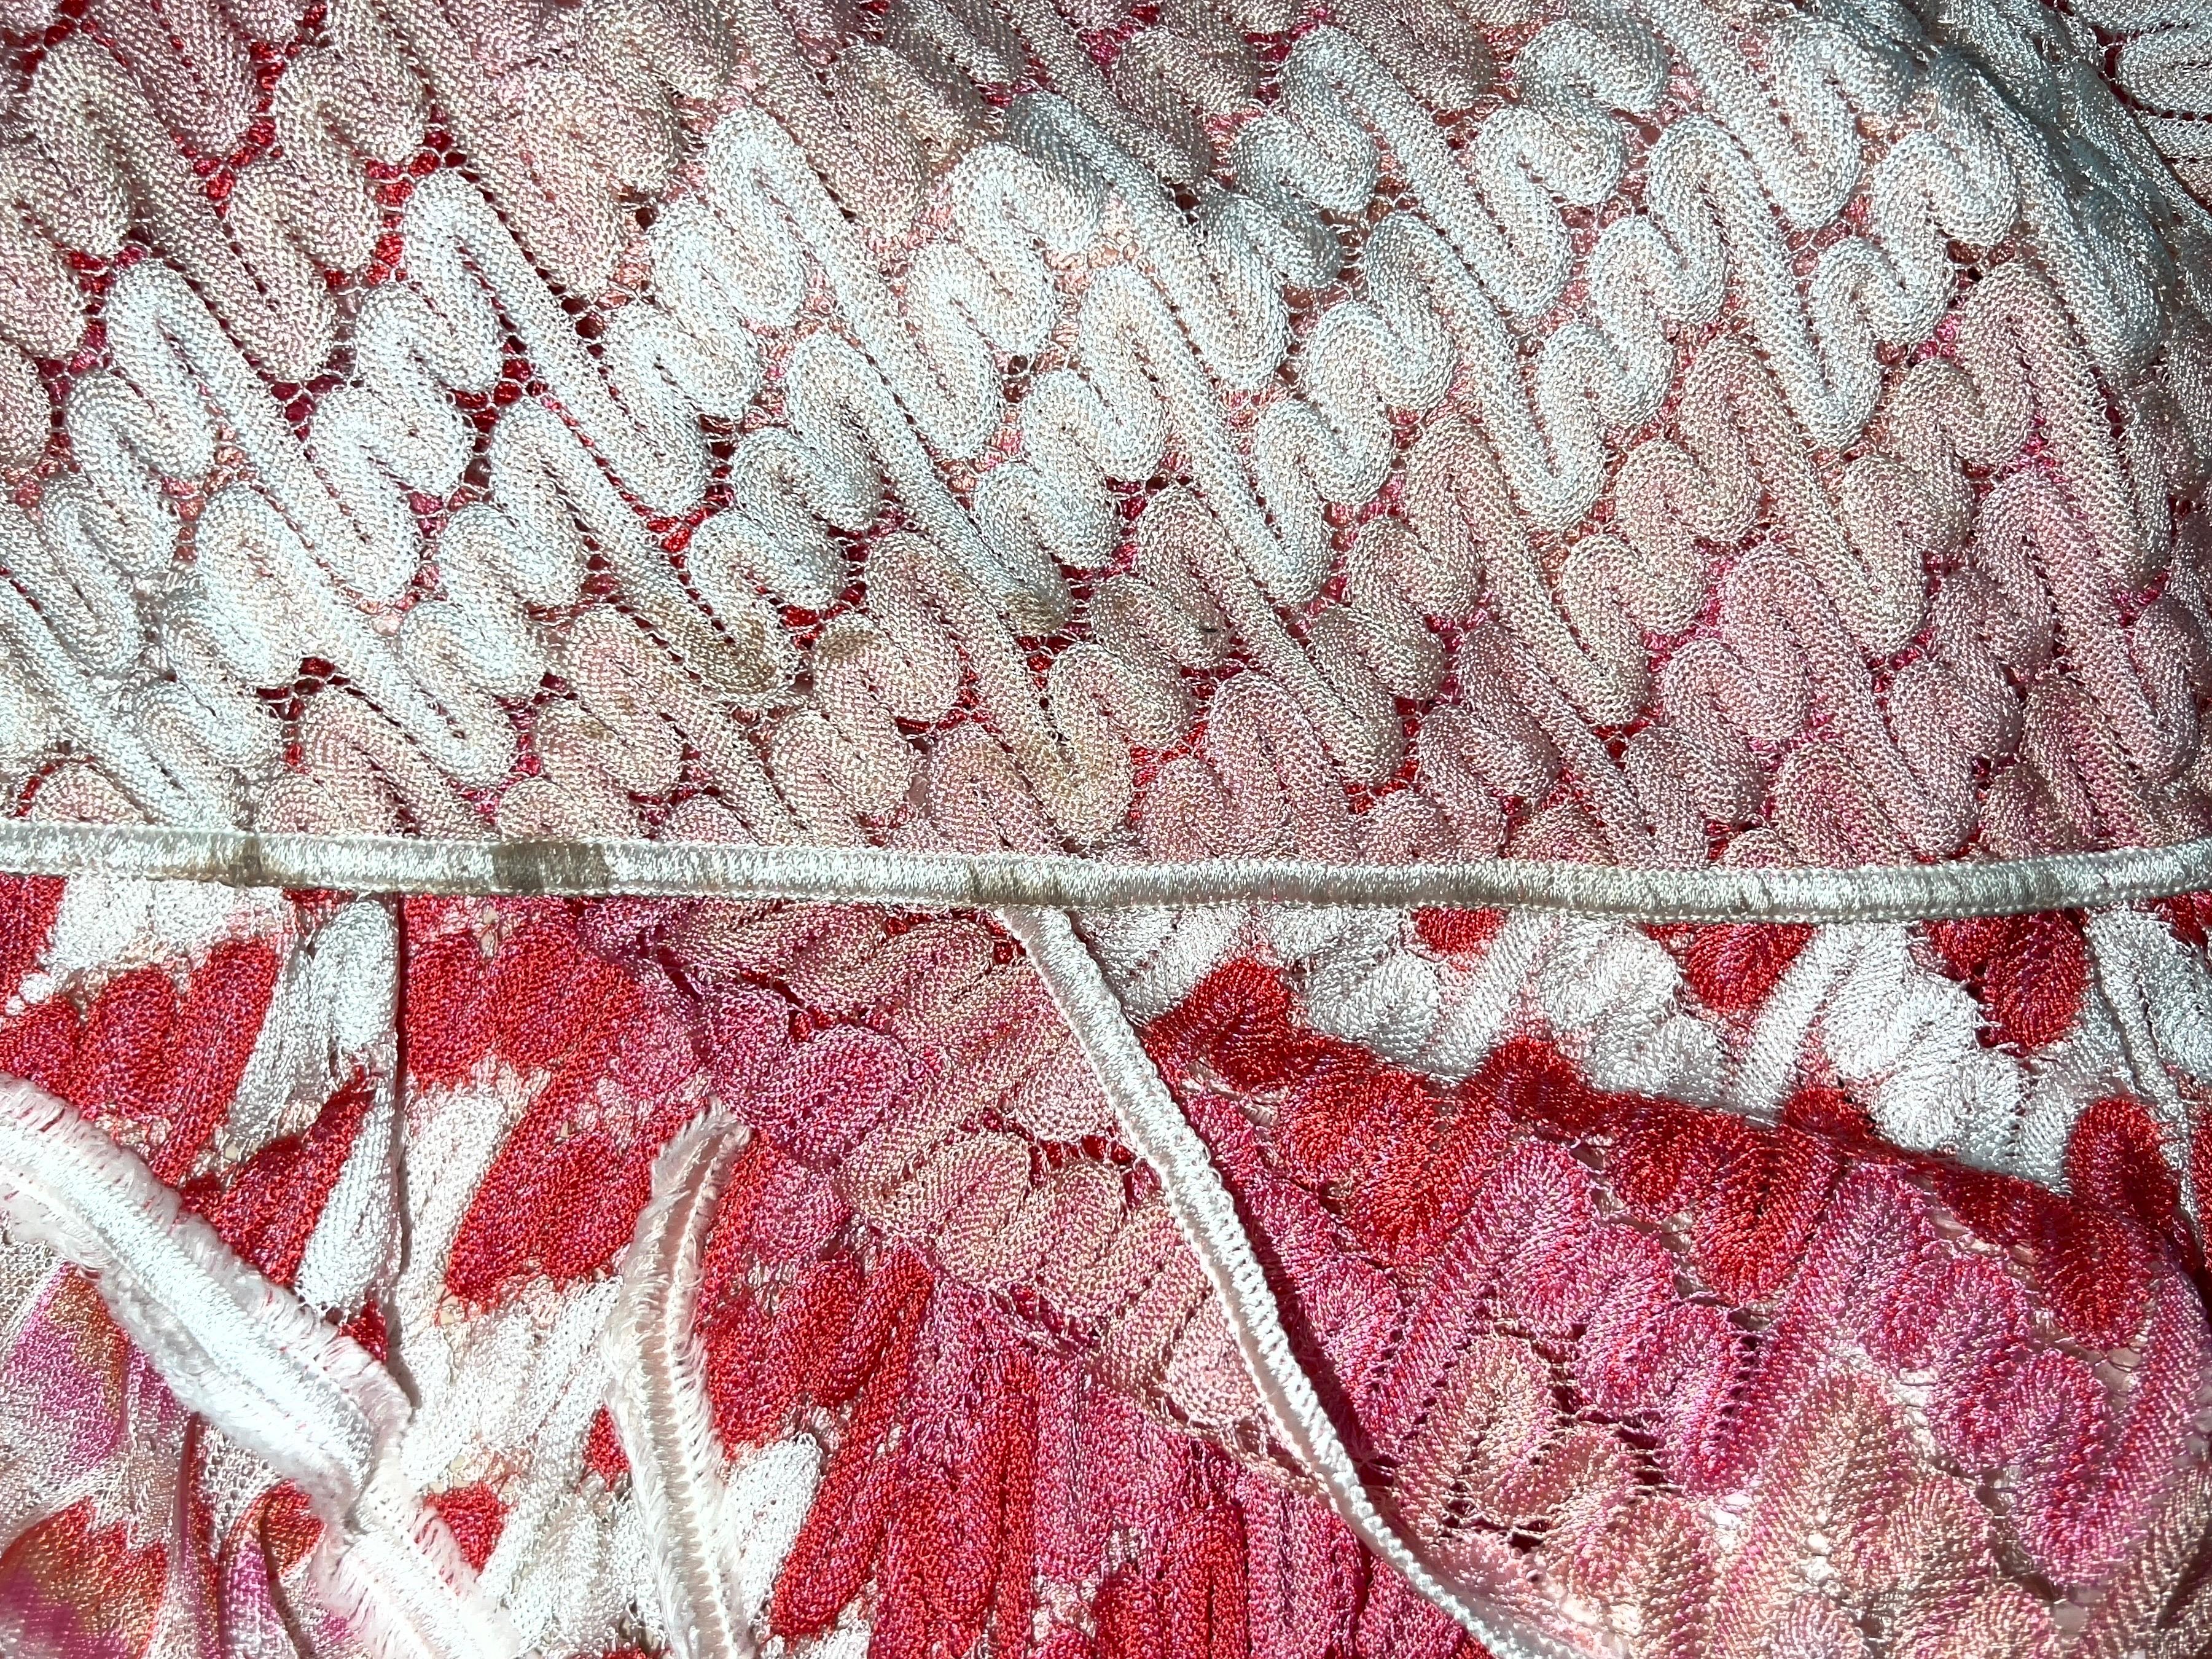 Missoni Crochet Knit Maxi Dress Pink Shades with Peek-a-boo Detail 42 4